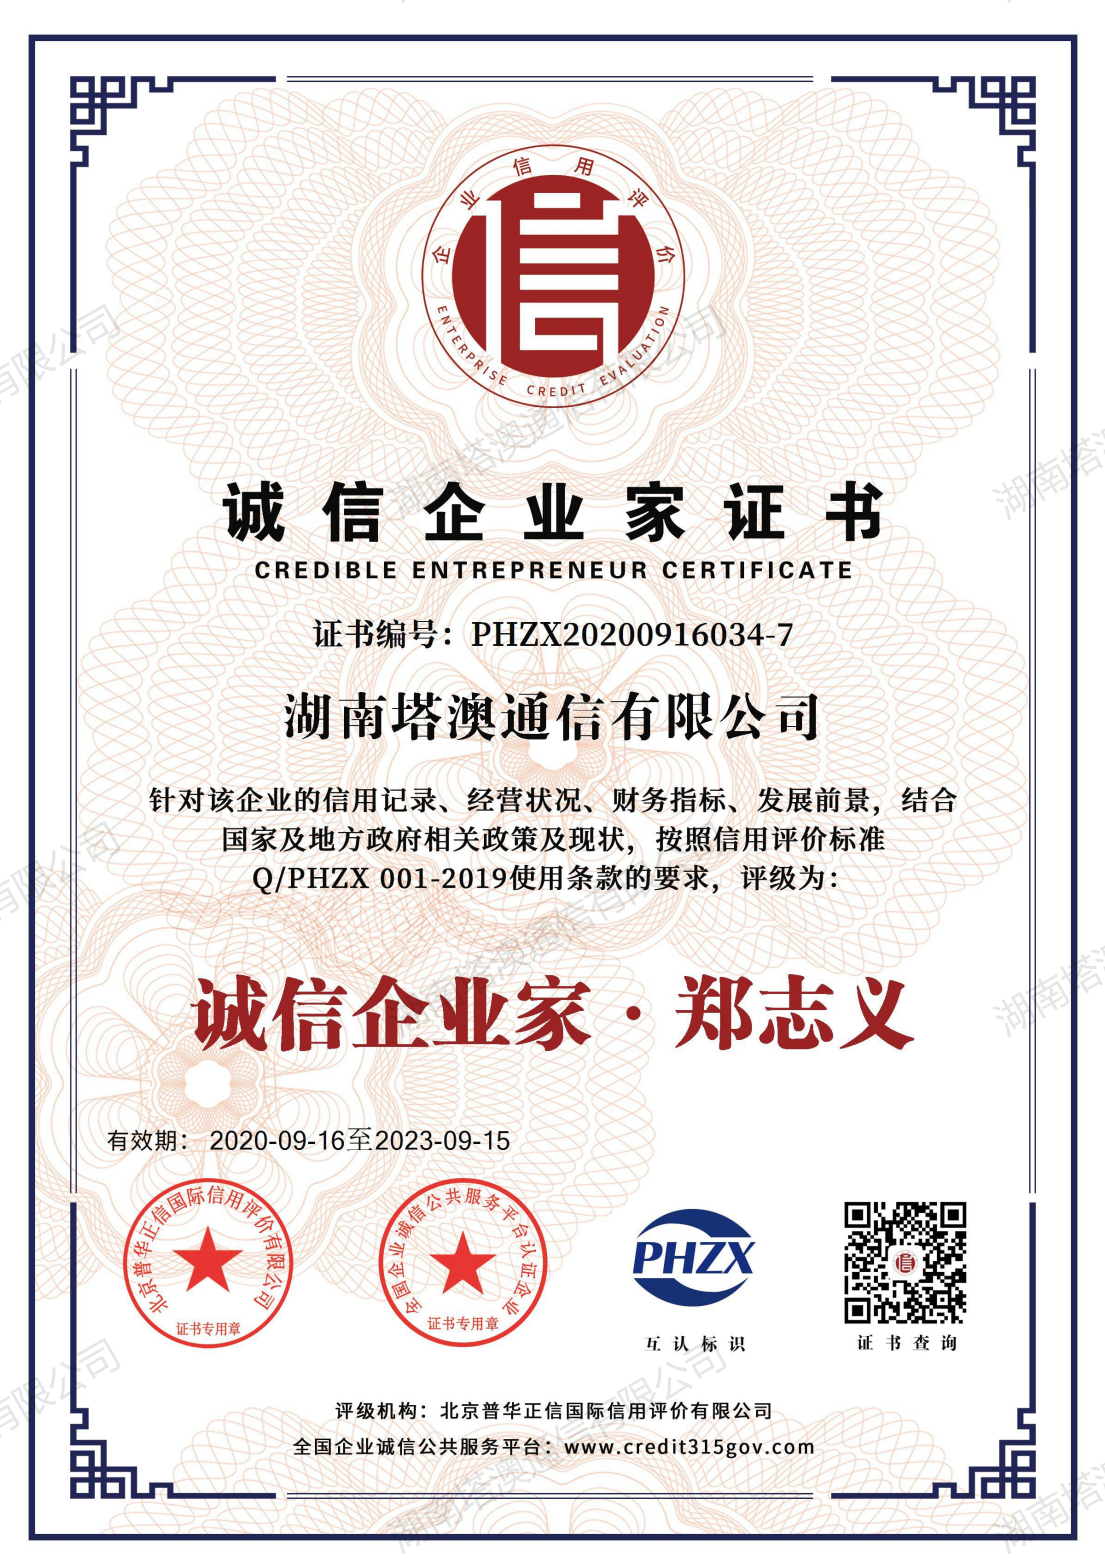 Certificate of Honest Entrepreneur